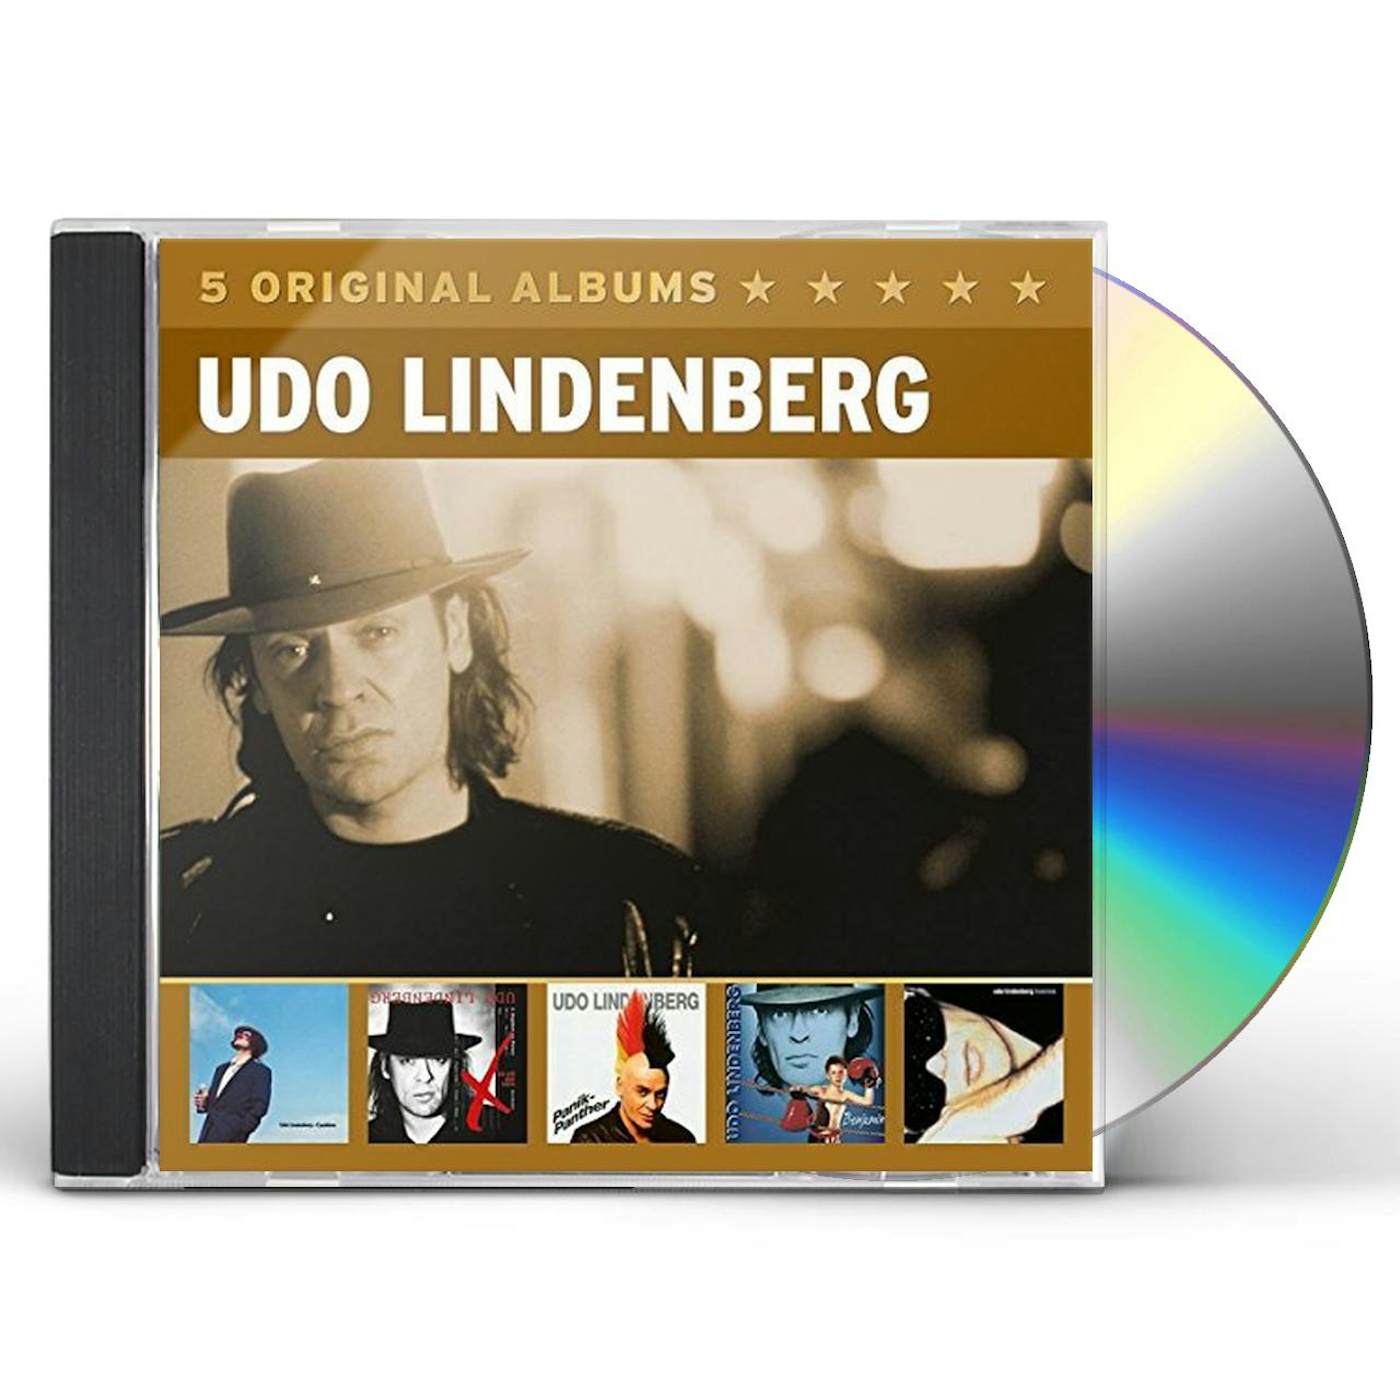 Udo Lindenberg 5 ORIGINAL ALBUMS 3 CD